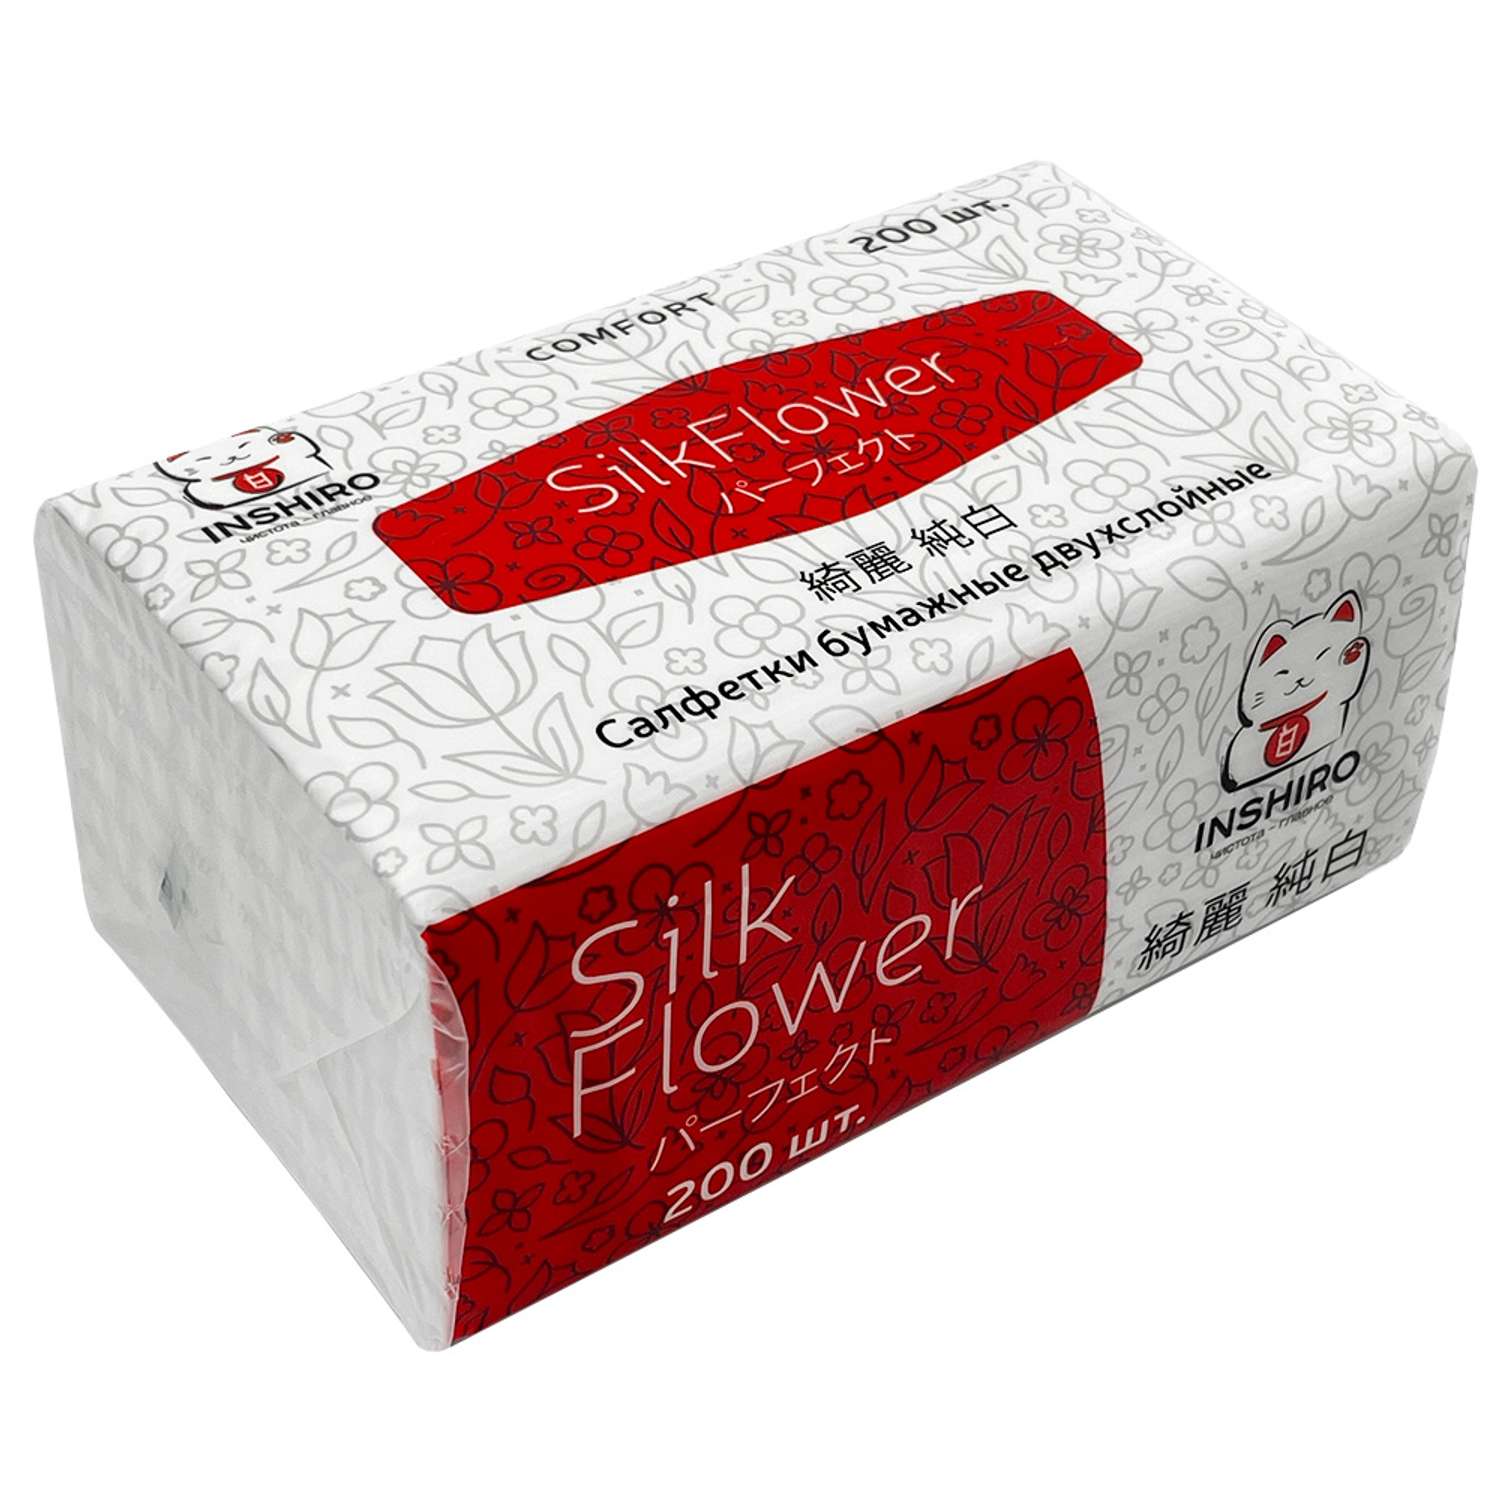 Бумажные салфетки Inshiro Silk Flower в мягкой упаковке 2 слоя 200 шт - фото 1